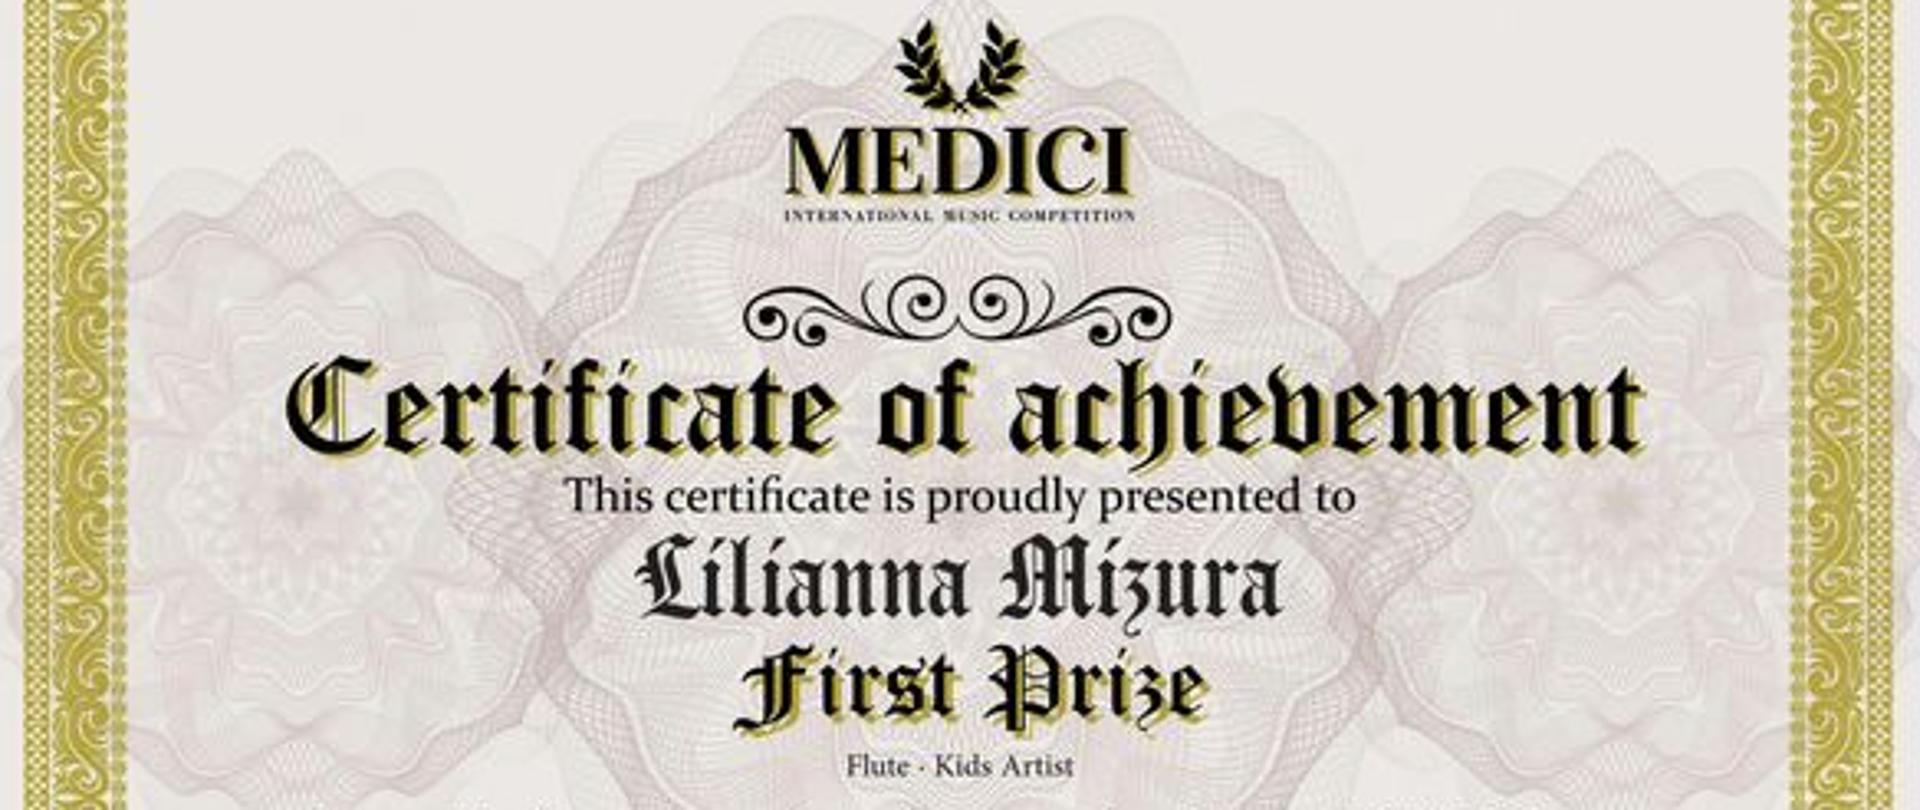 Dyplom z konkursu z napisem "Certificate of achievement is proudly presented to Lilianna Mizura First Prize"